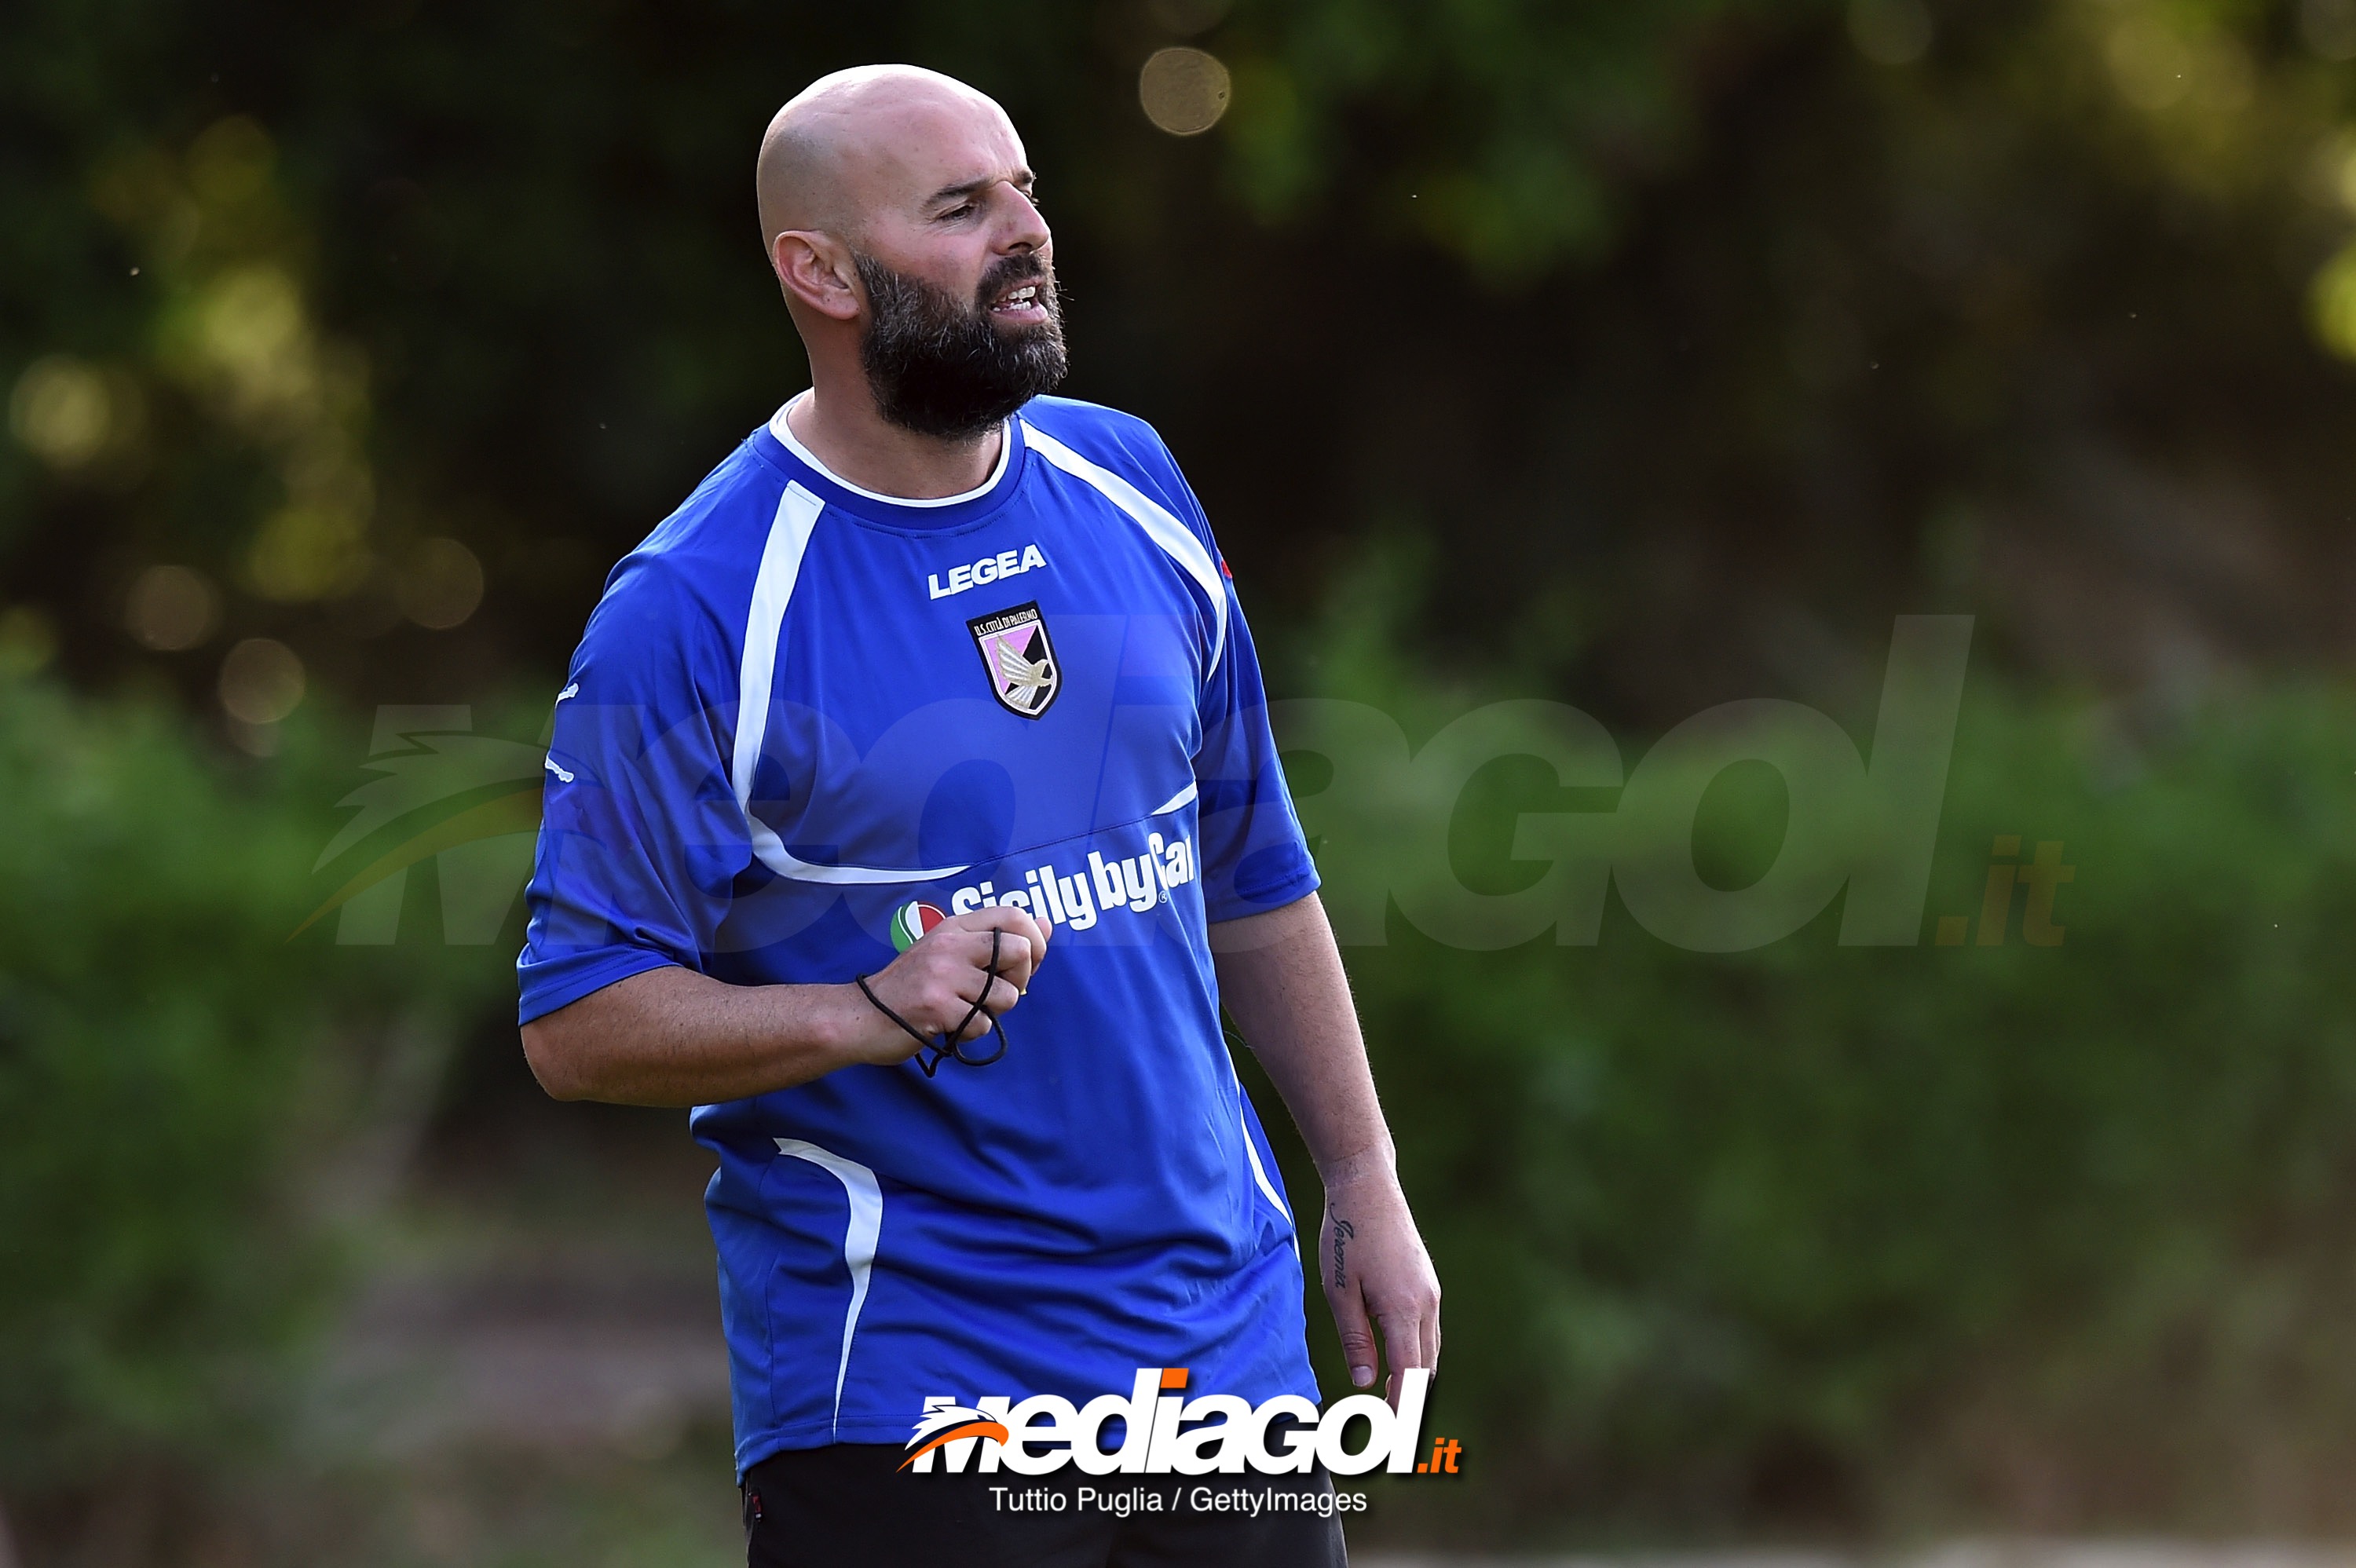 US Citta di Palermo Unveils New Coach Roberto Stellone